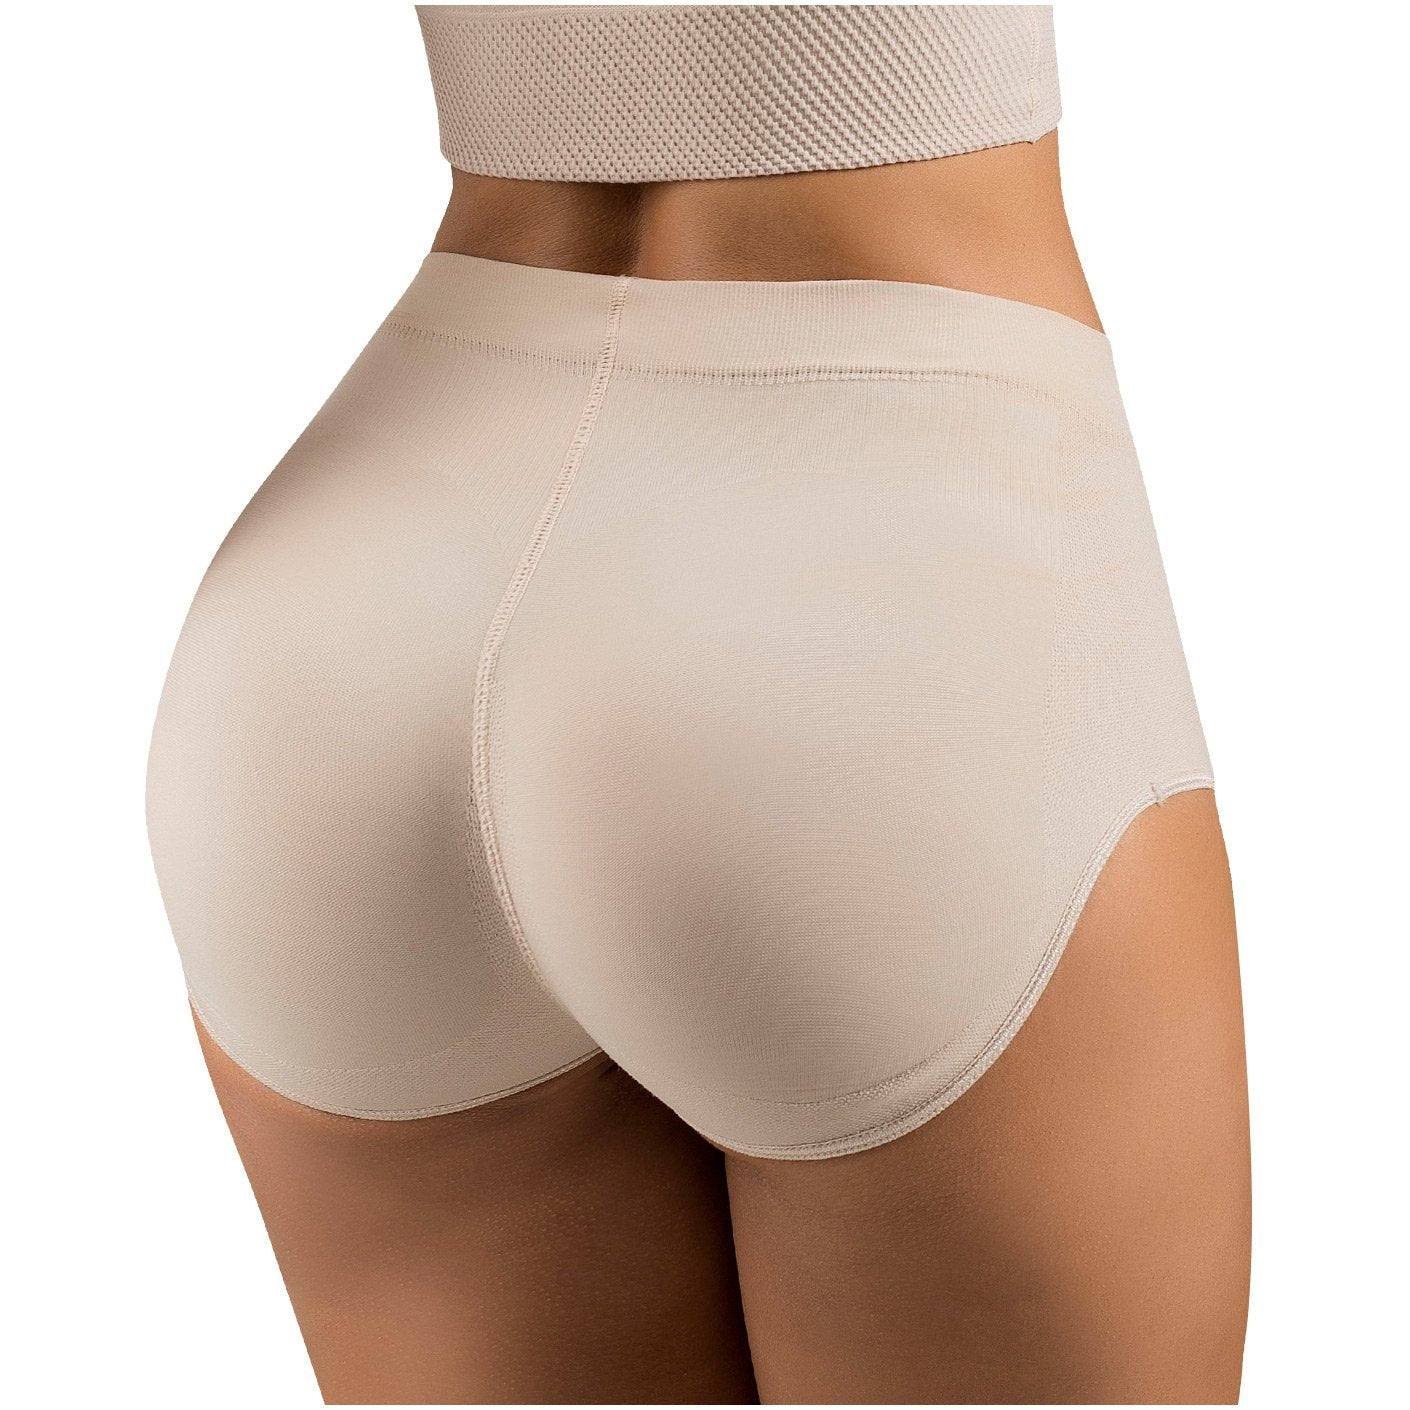 LATY ROSE 21896 High Waist Butt Lifting Panties - New England Supplier